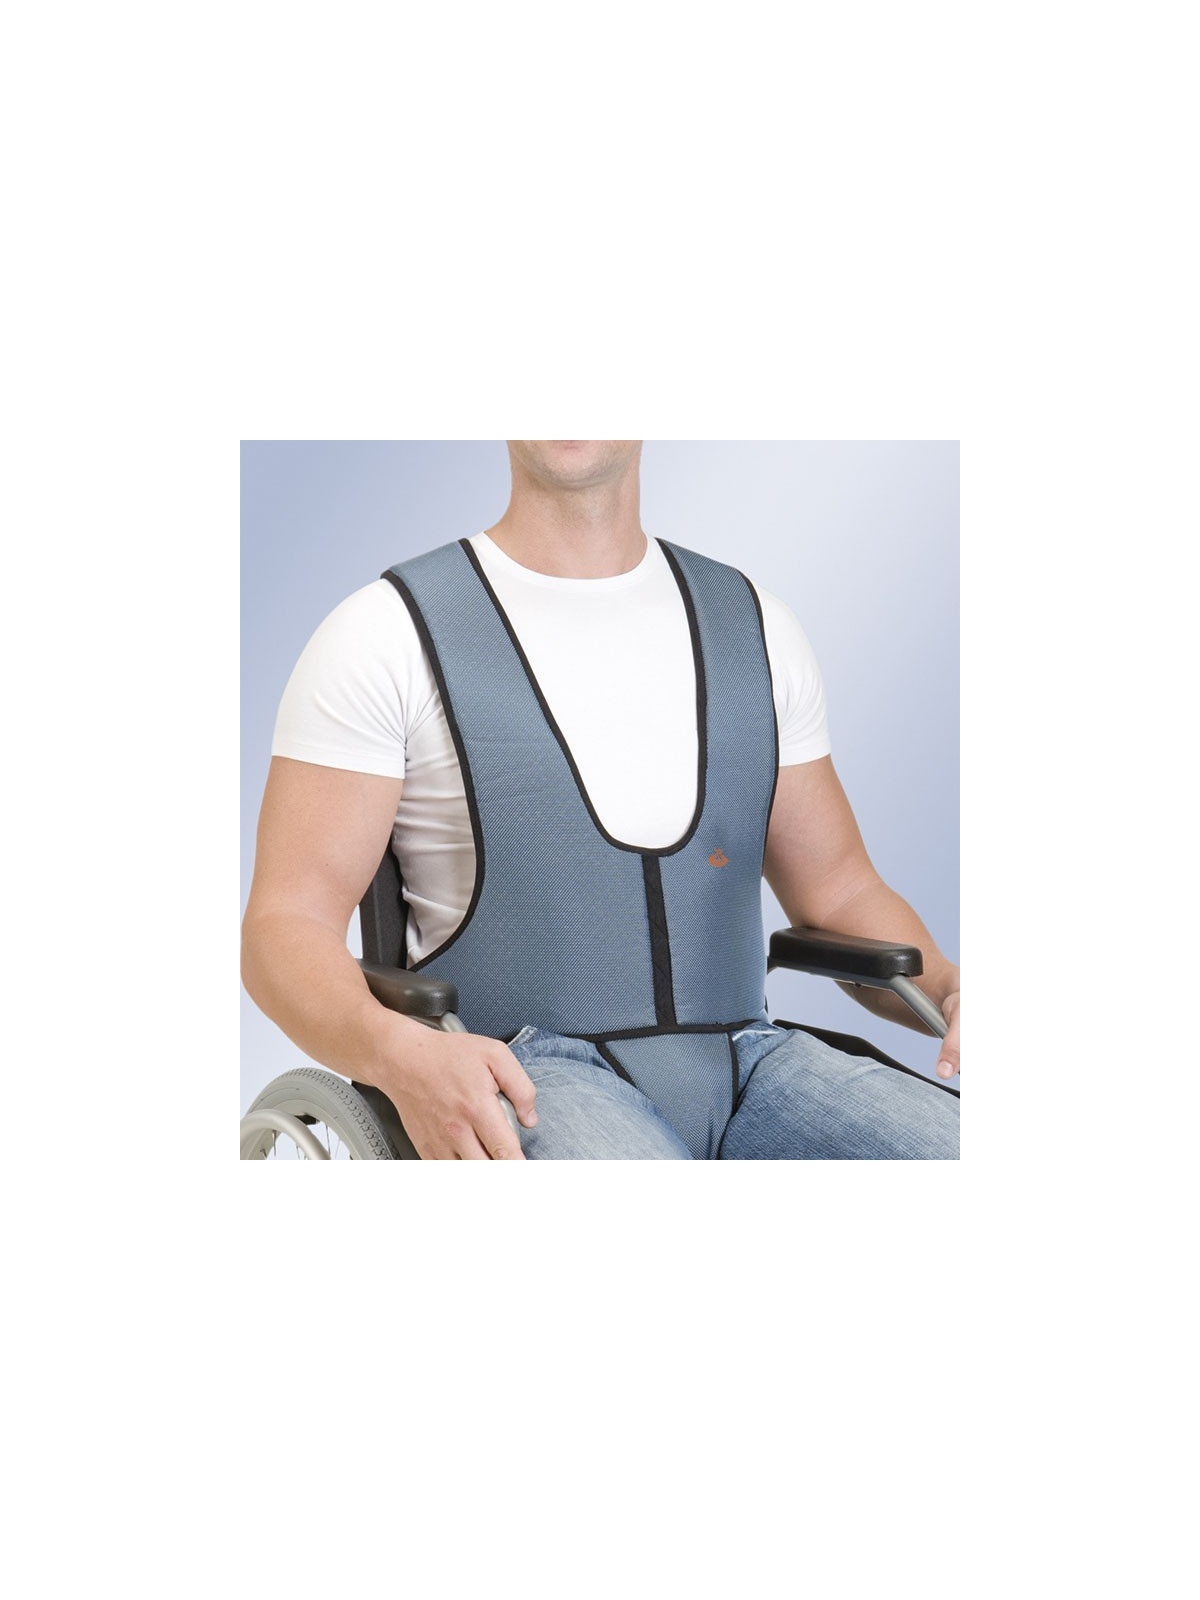 Cinturón abdominal con tirantes de sujeción a silla de ruedas